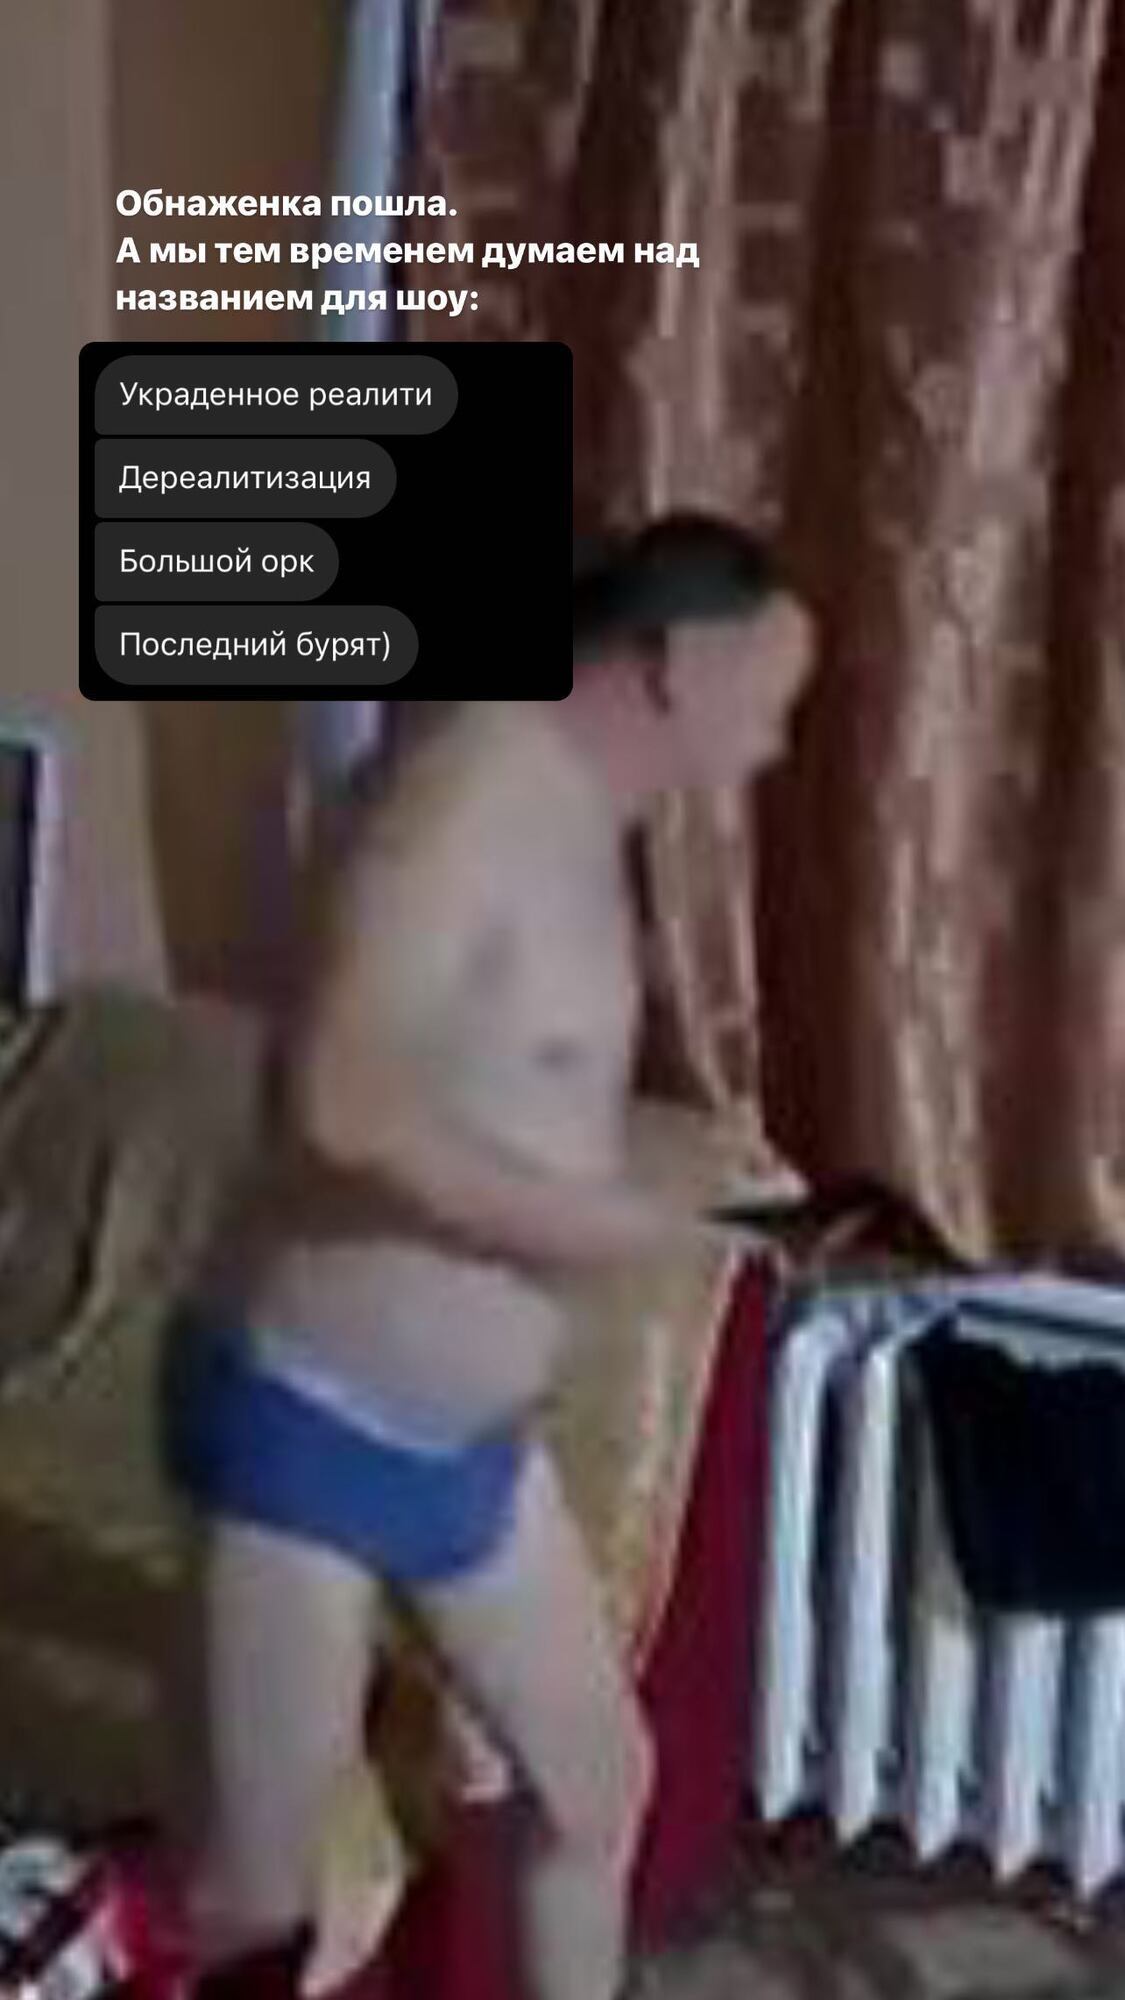 Бурятский ''Дом-2'': оккупант установил украденную в Украине камеру в своем доме, теперь ее владелец смотрит трансляцию. Фото и видео